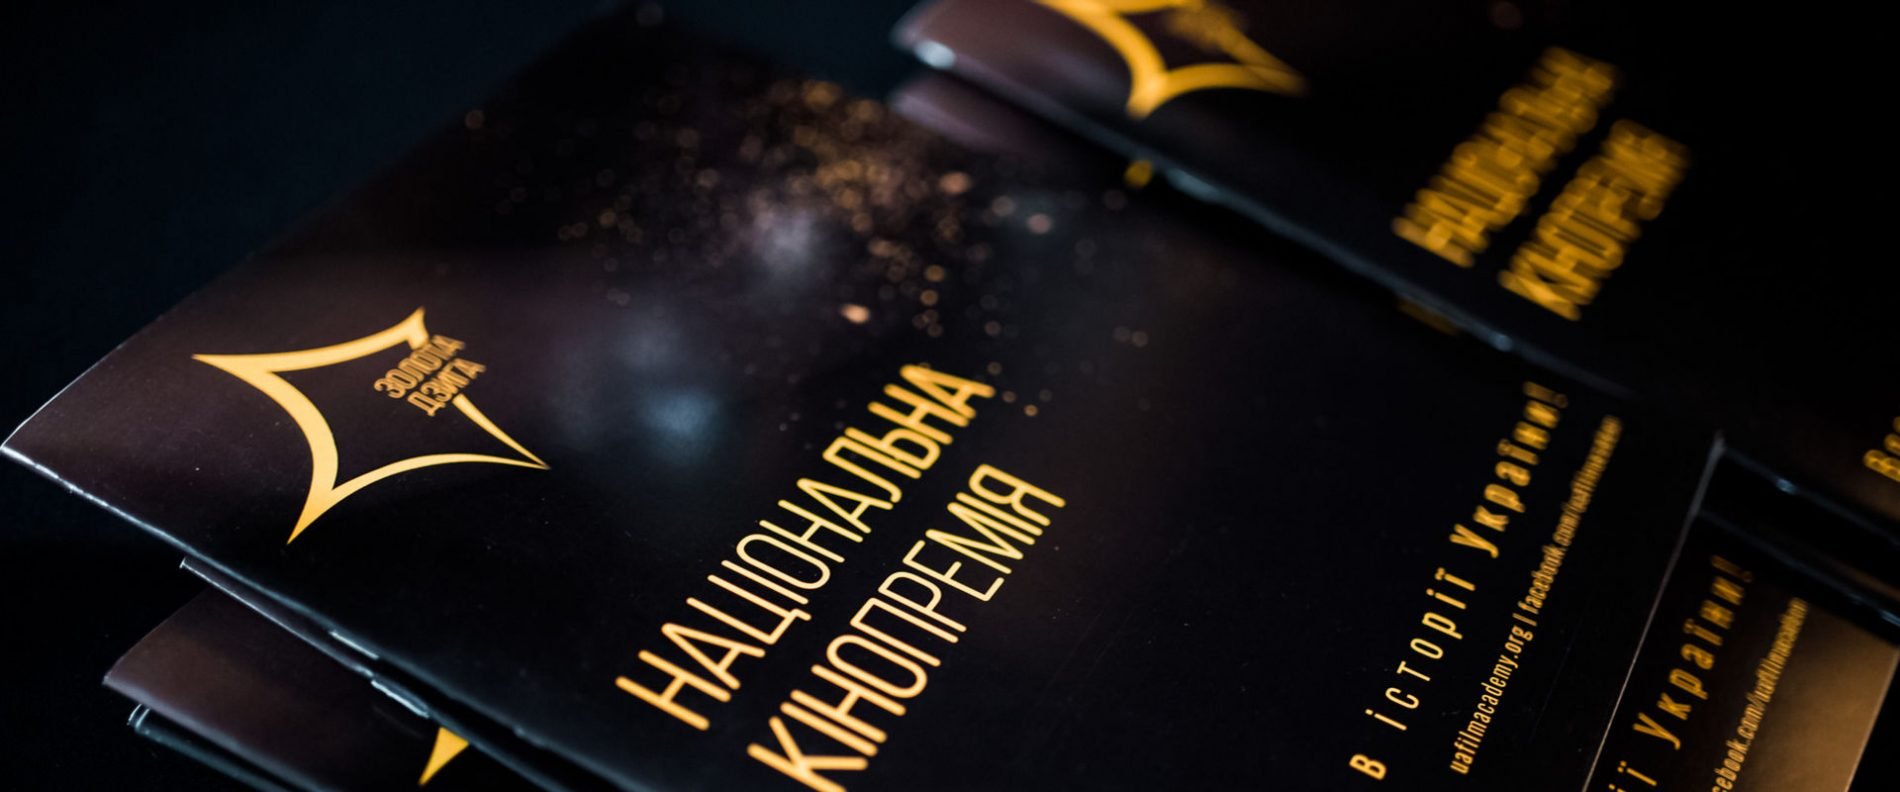 Золота дзиґа 2019 - все номинанты украинской кинопремии - фото 425743